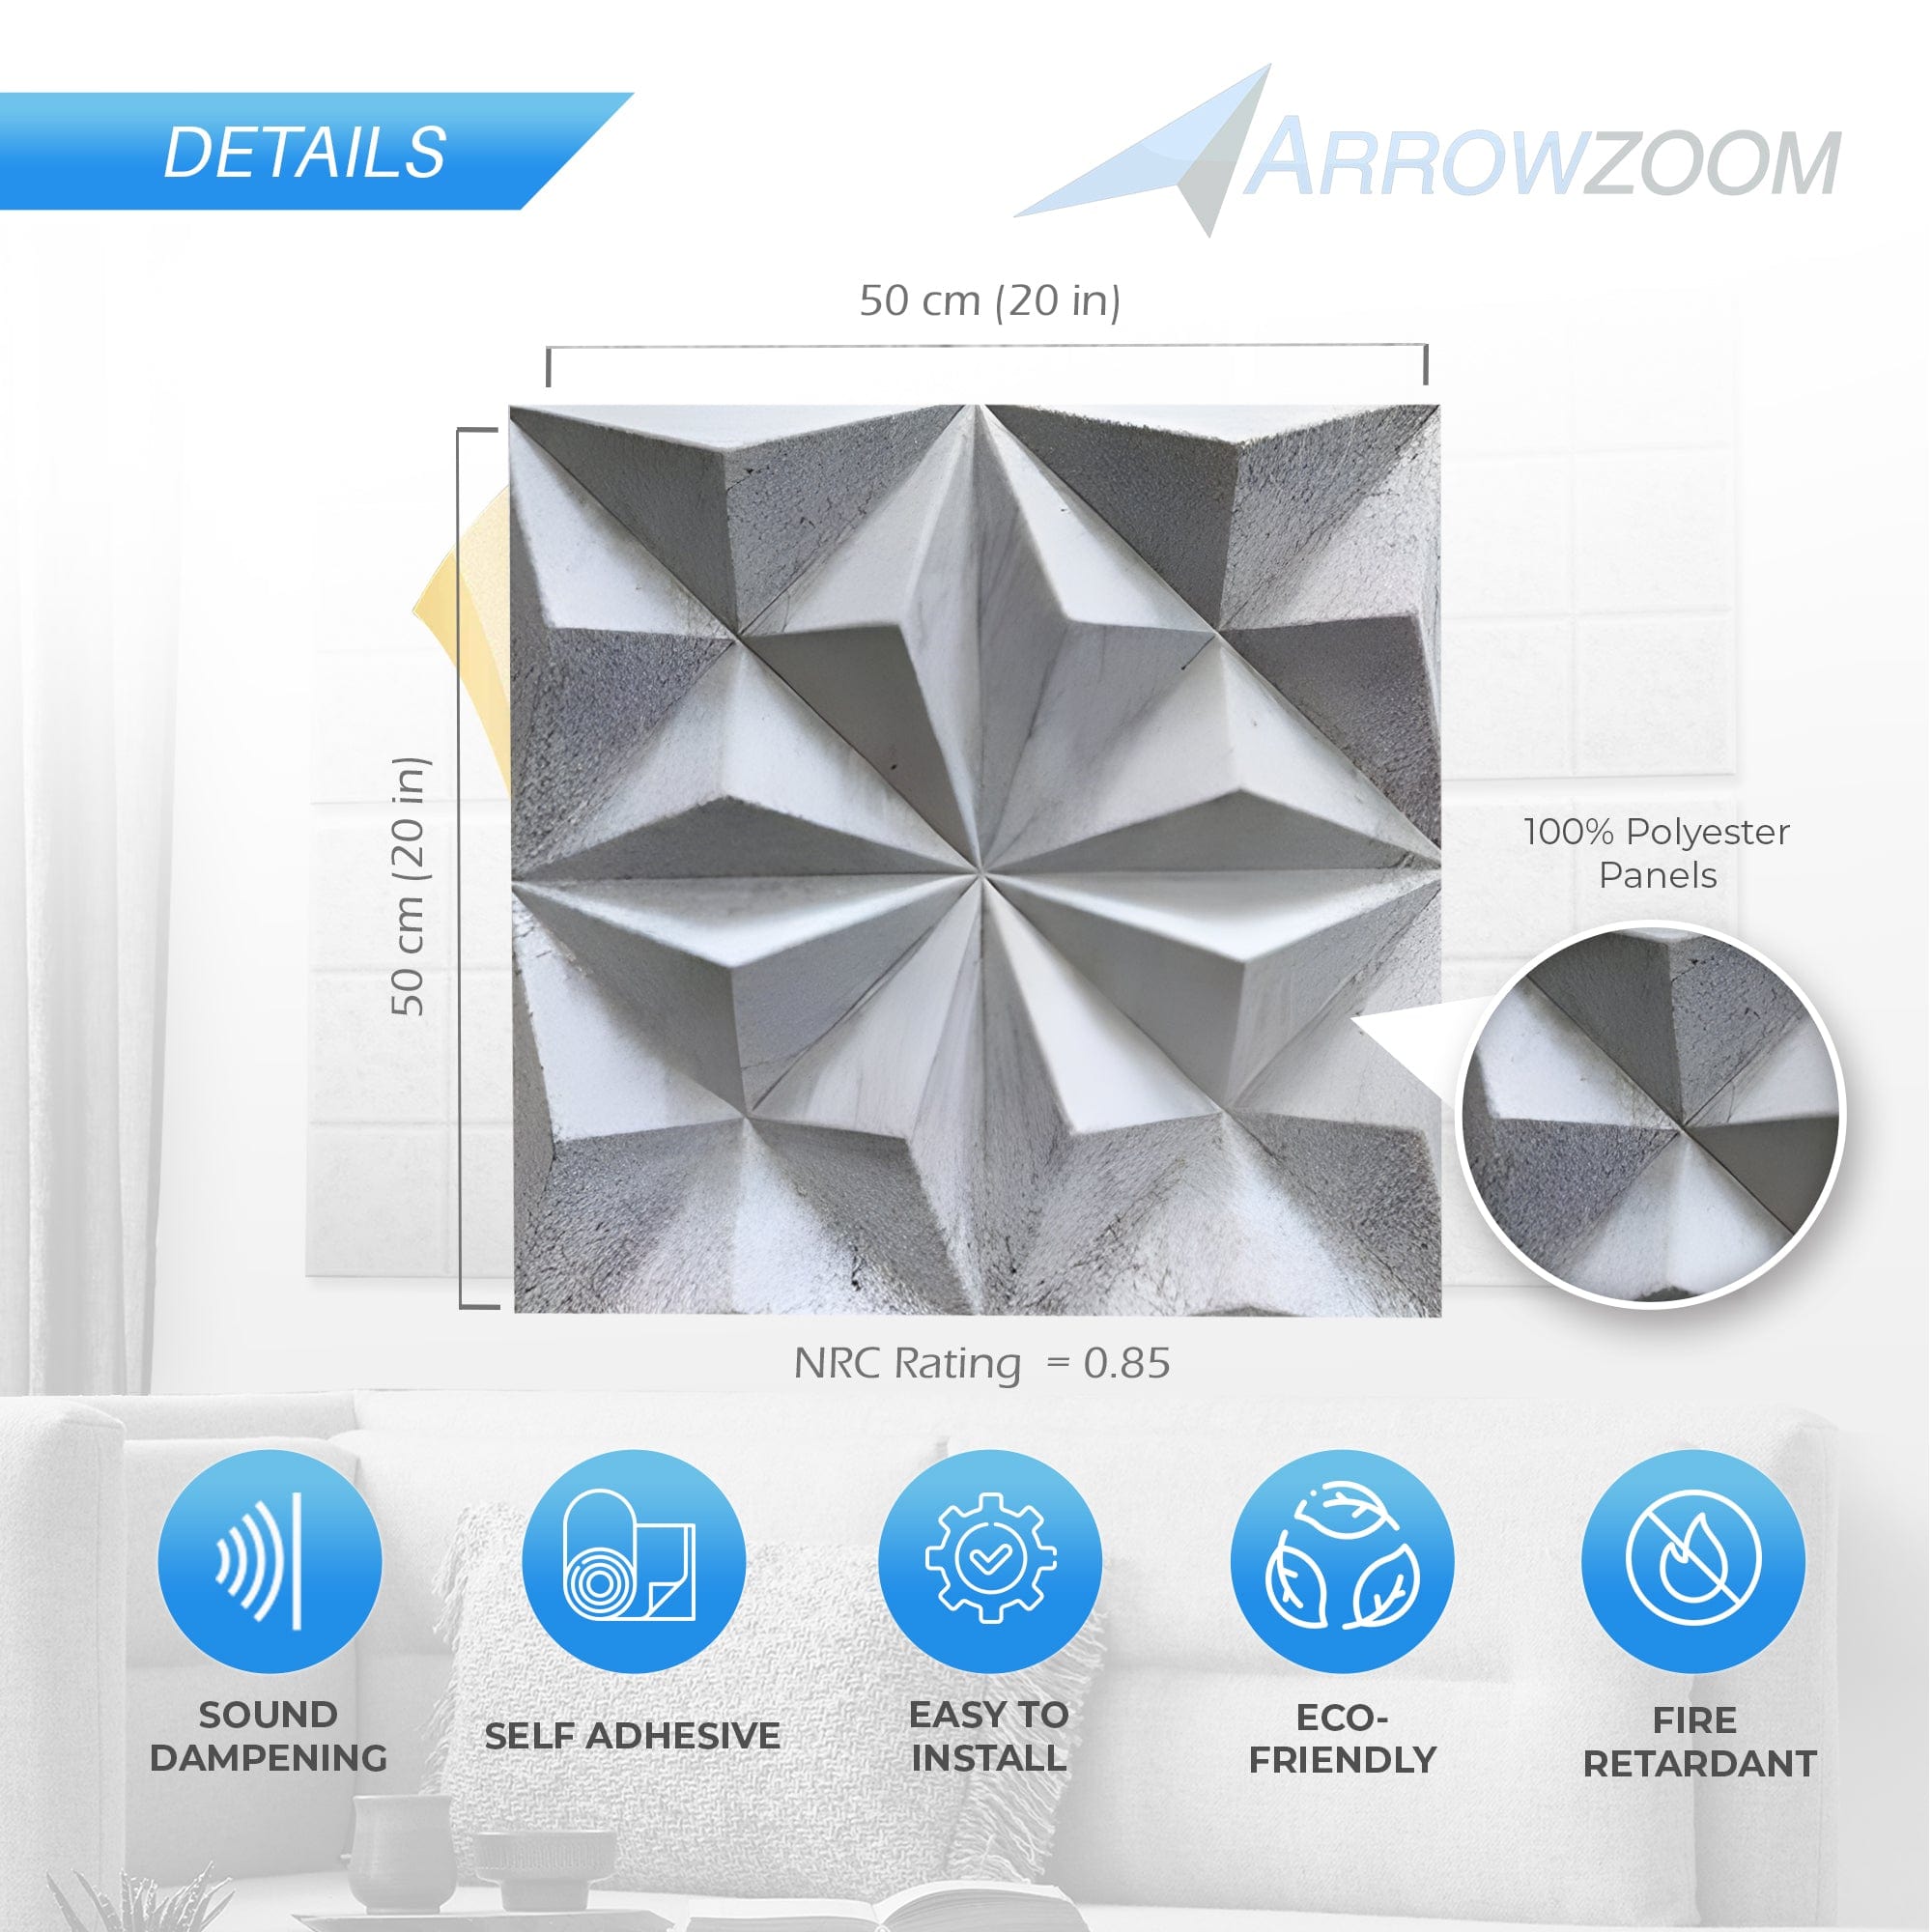 Arrowzoom Elevating Interior 3D Polyester Felt Art Panels - KK1425